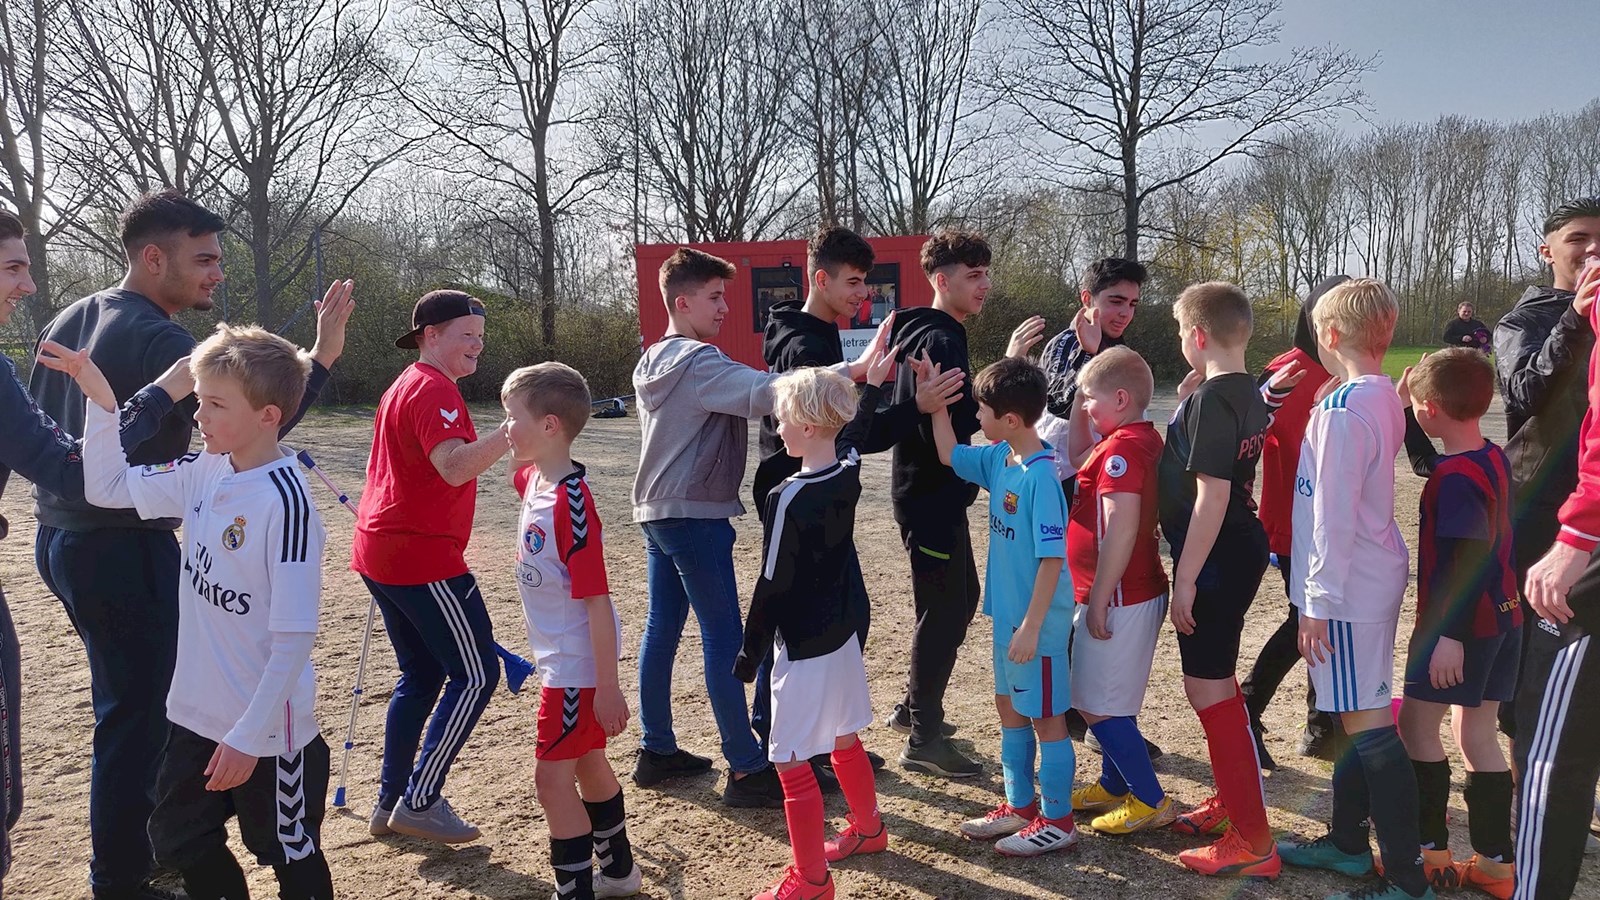 Nyuddannede unge bygger bro mellem boligområder og fodboldklubber